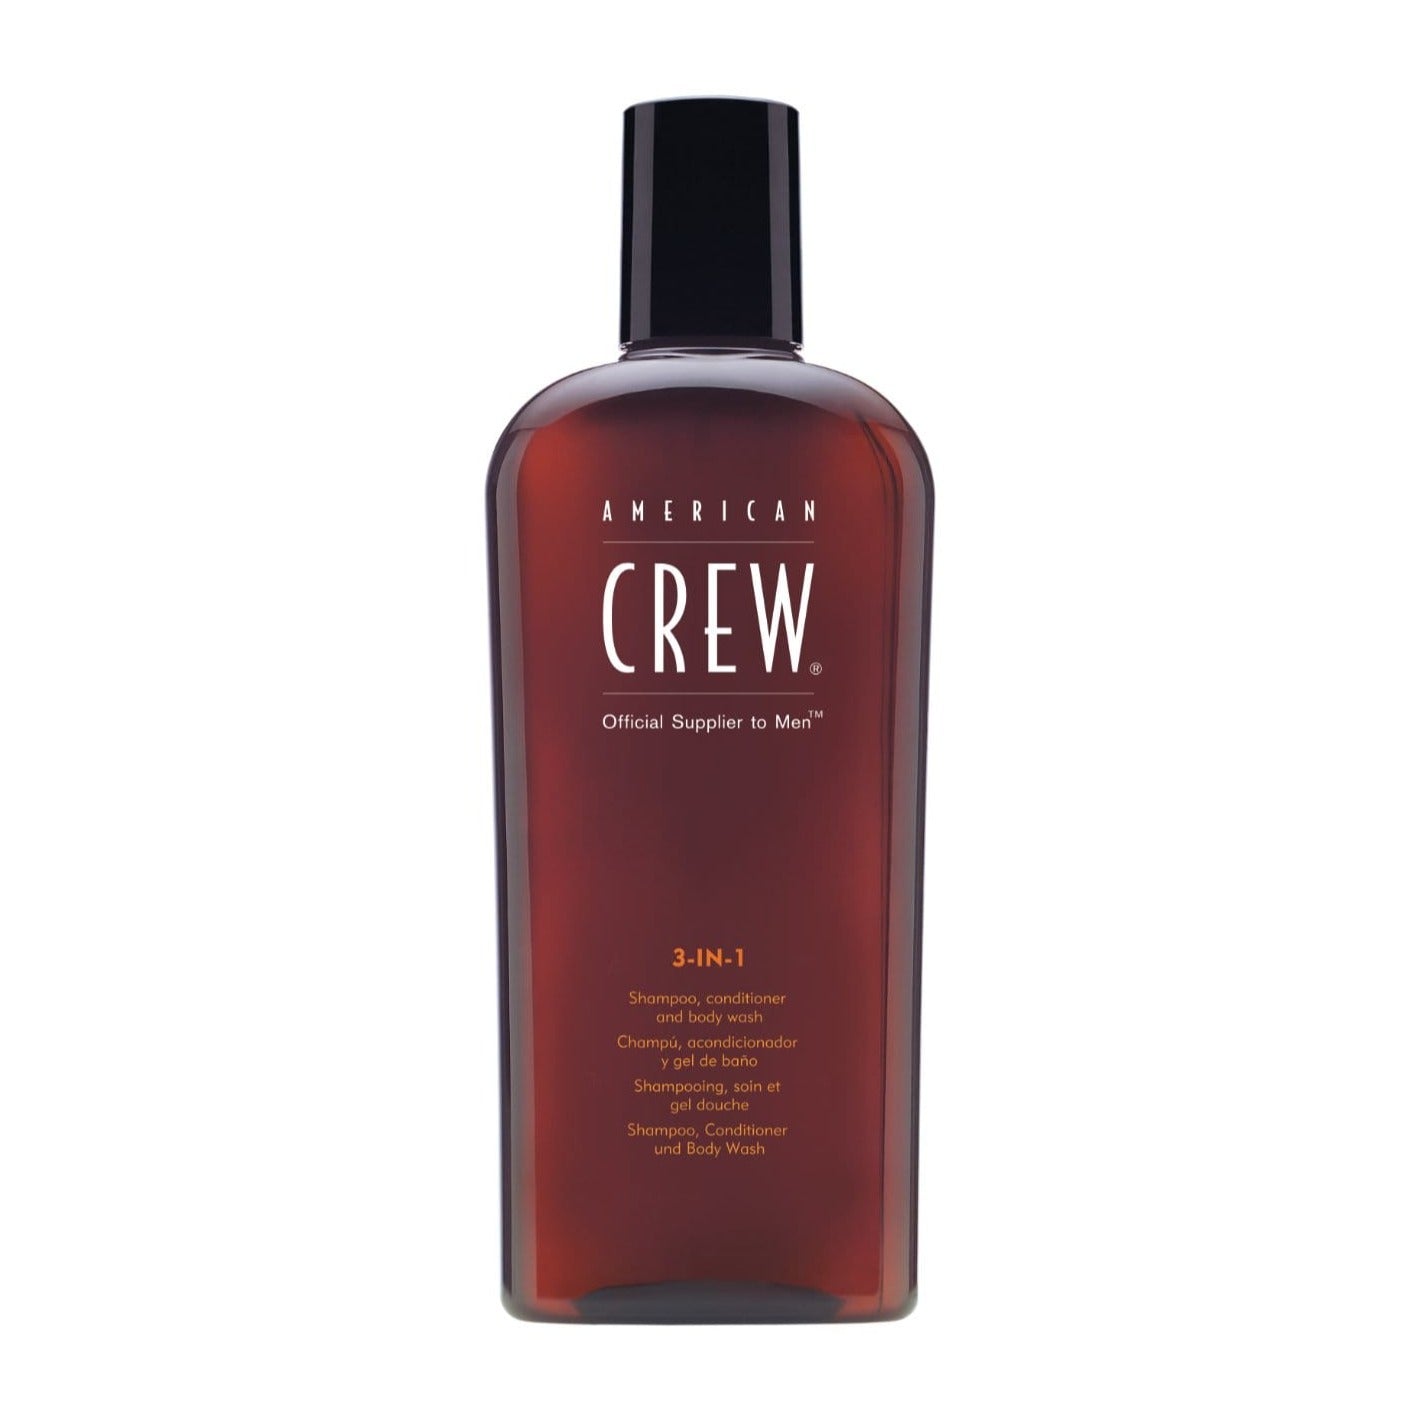 American Crew 3in1 Hair & Body Shampoo - Sagema